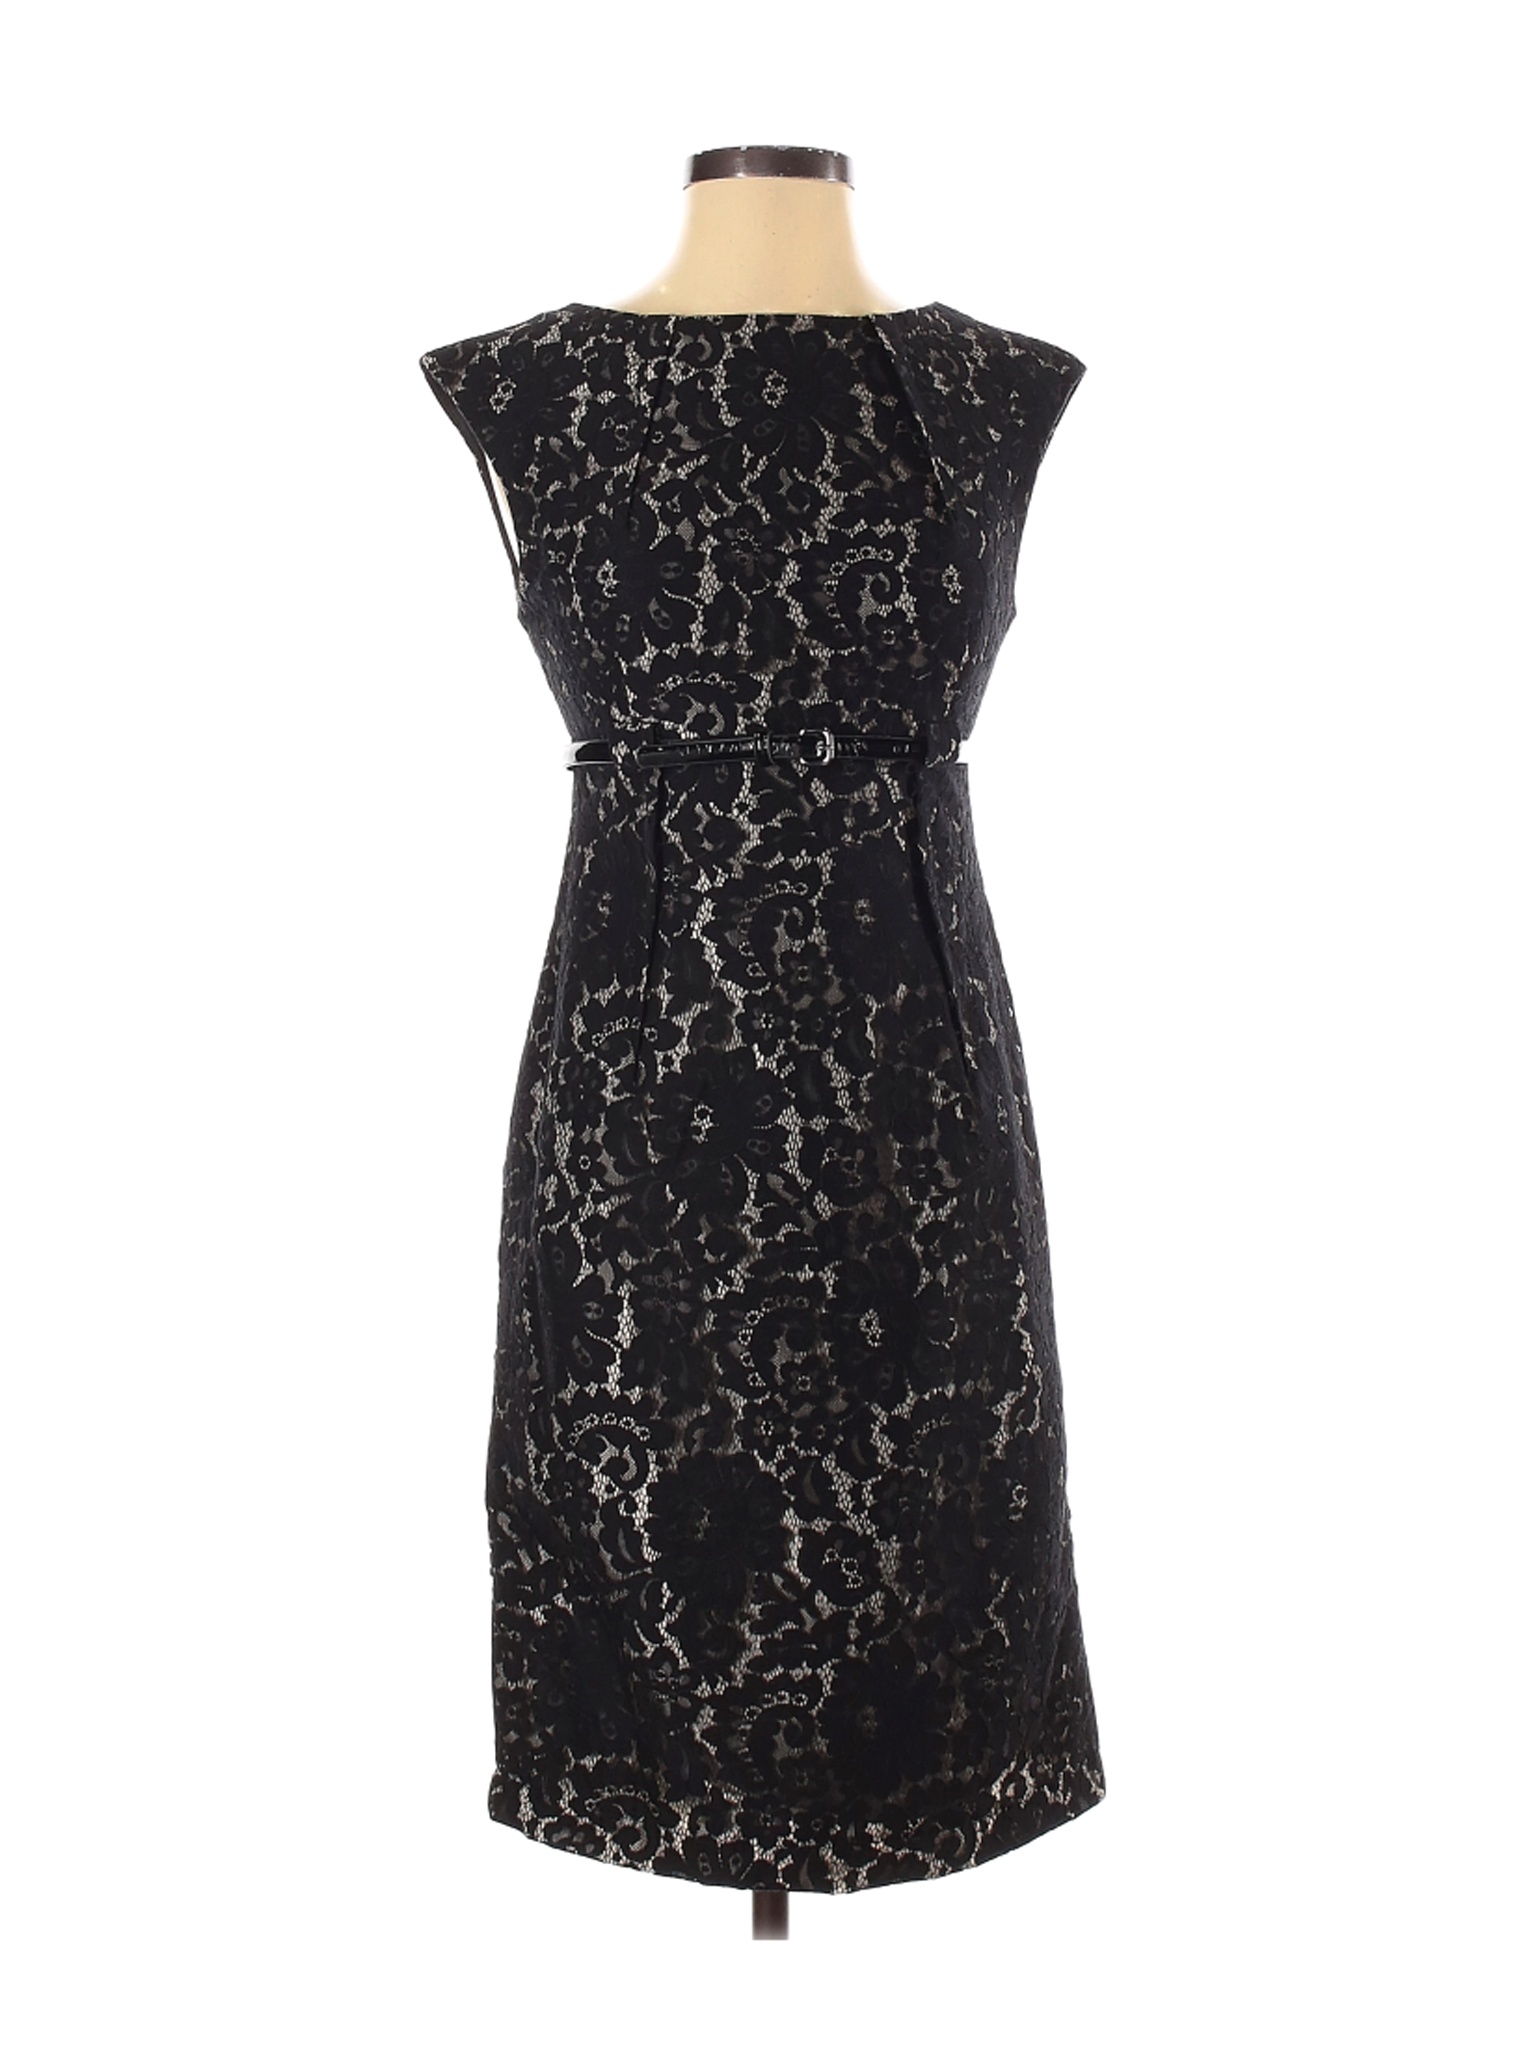 Calvin Klein Women Black Cocktail Dress 2 | eBay